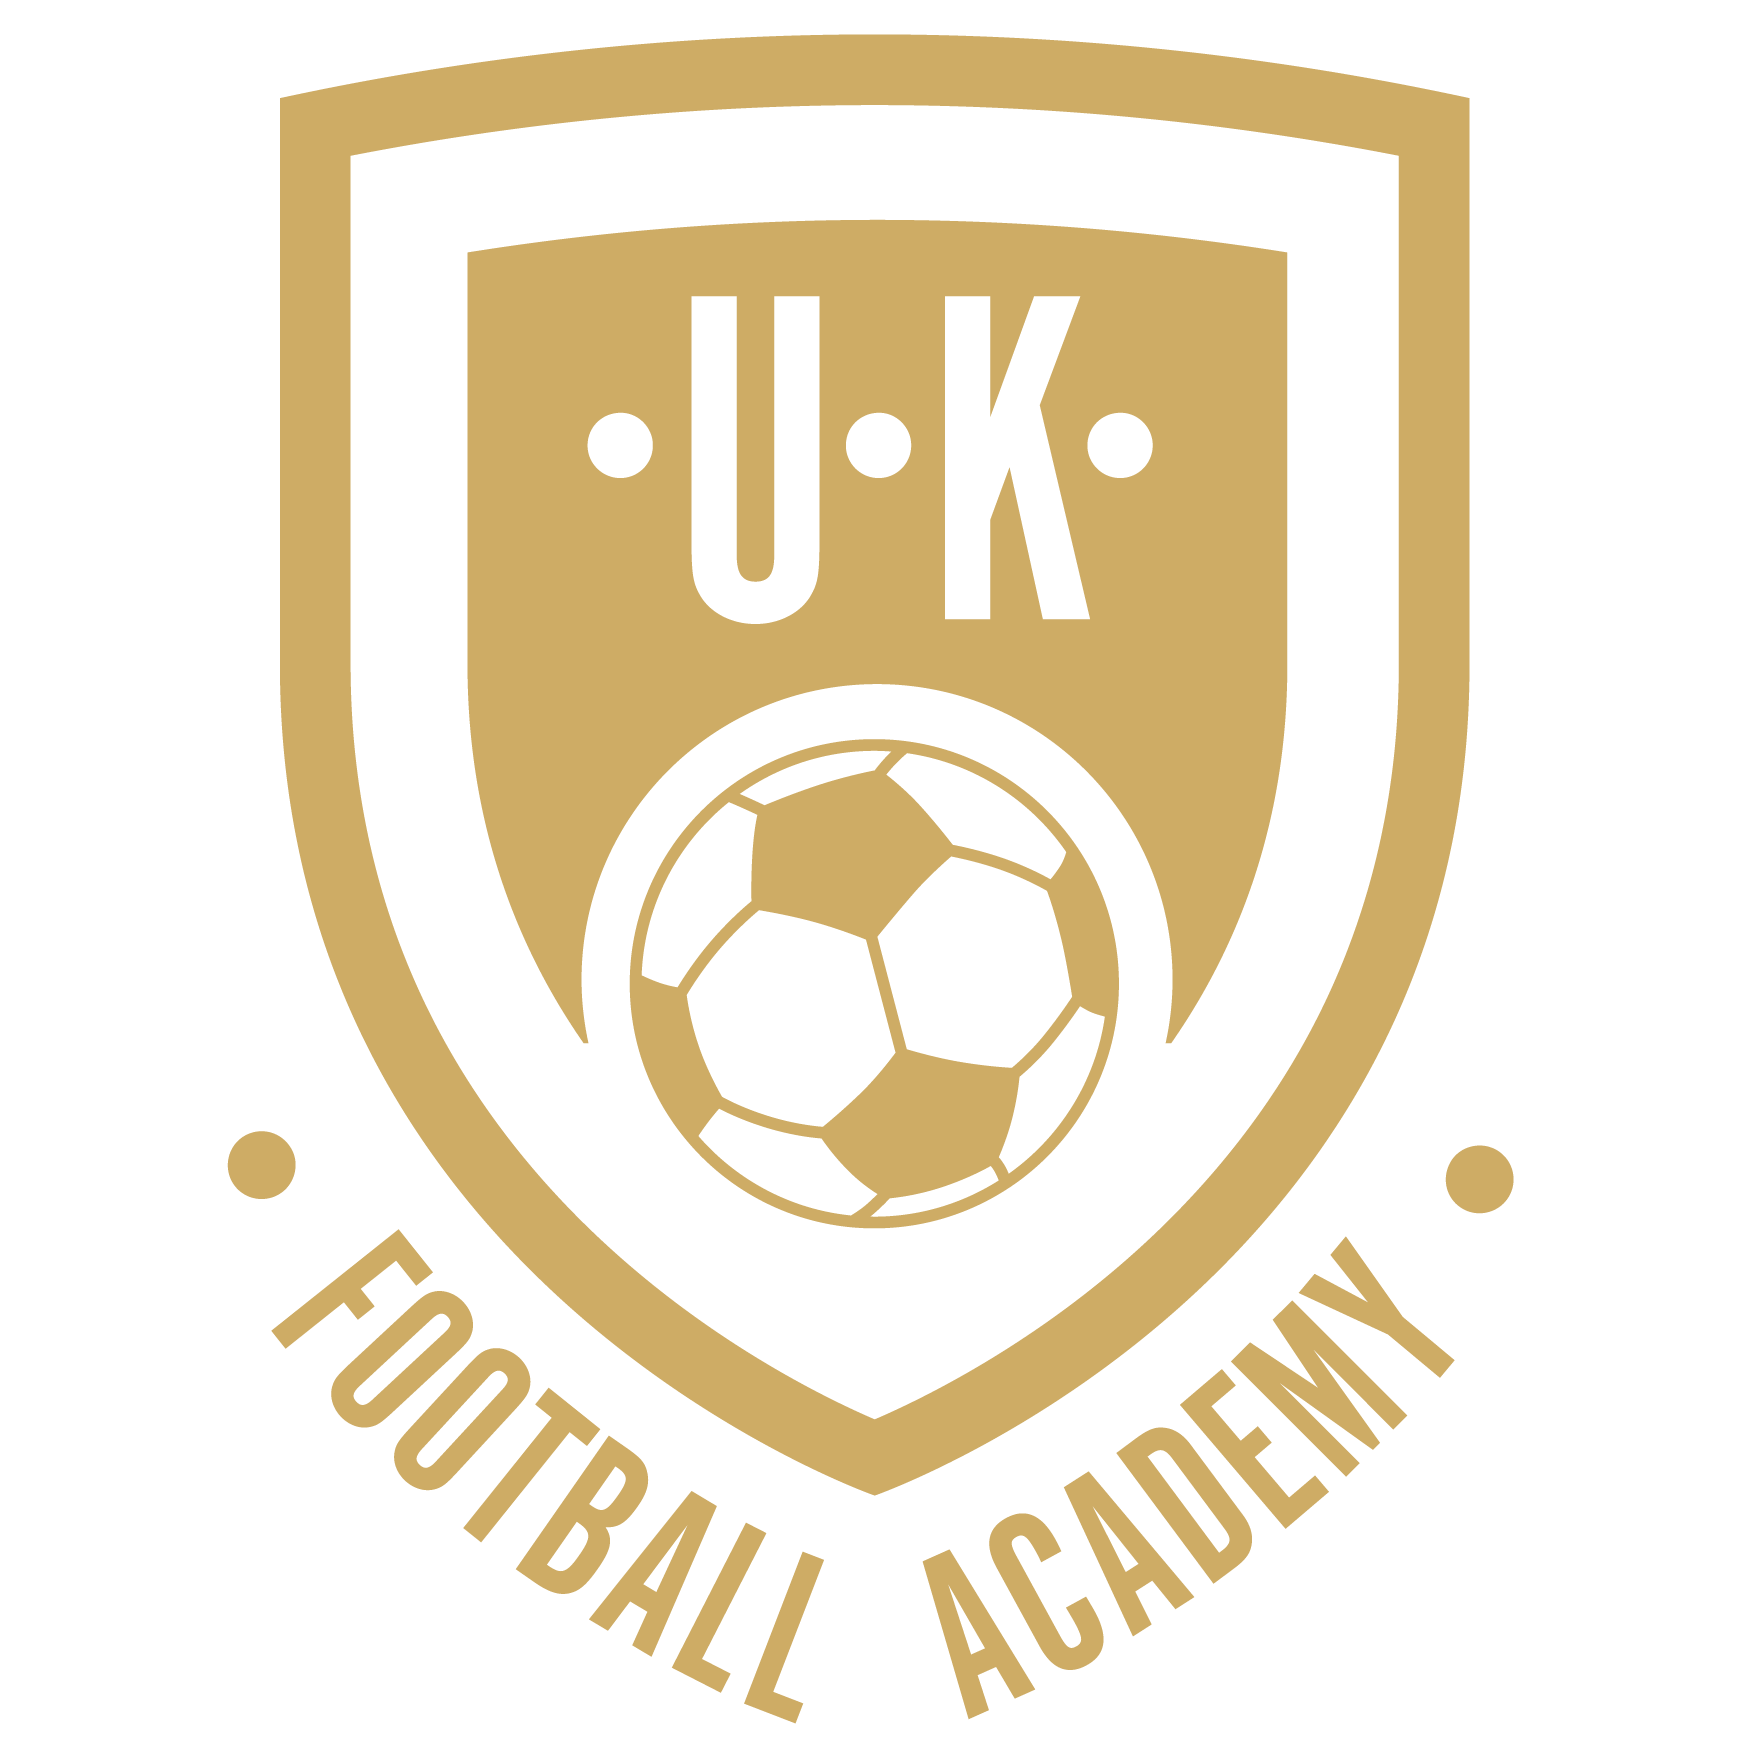 UK Football Academy